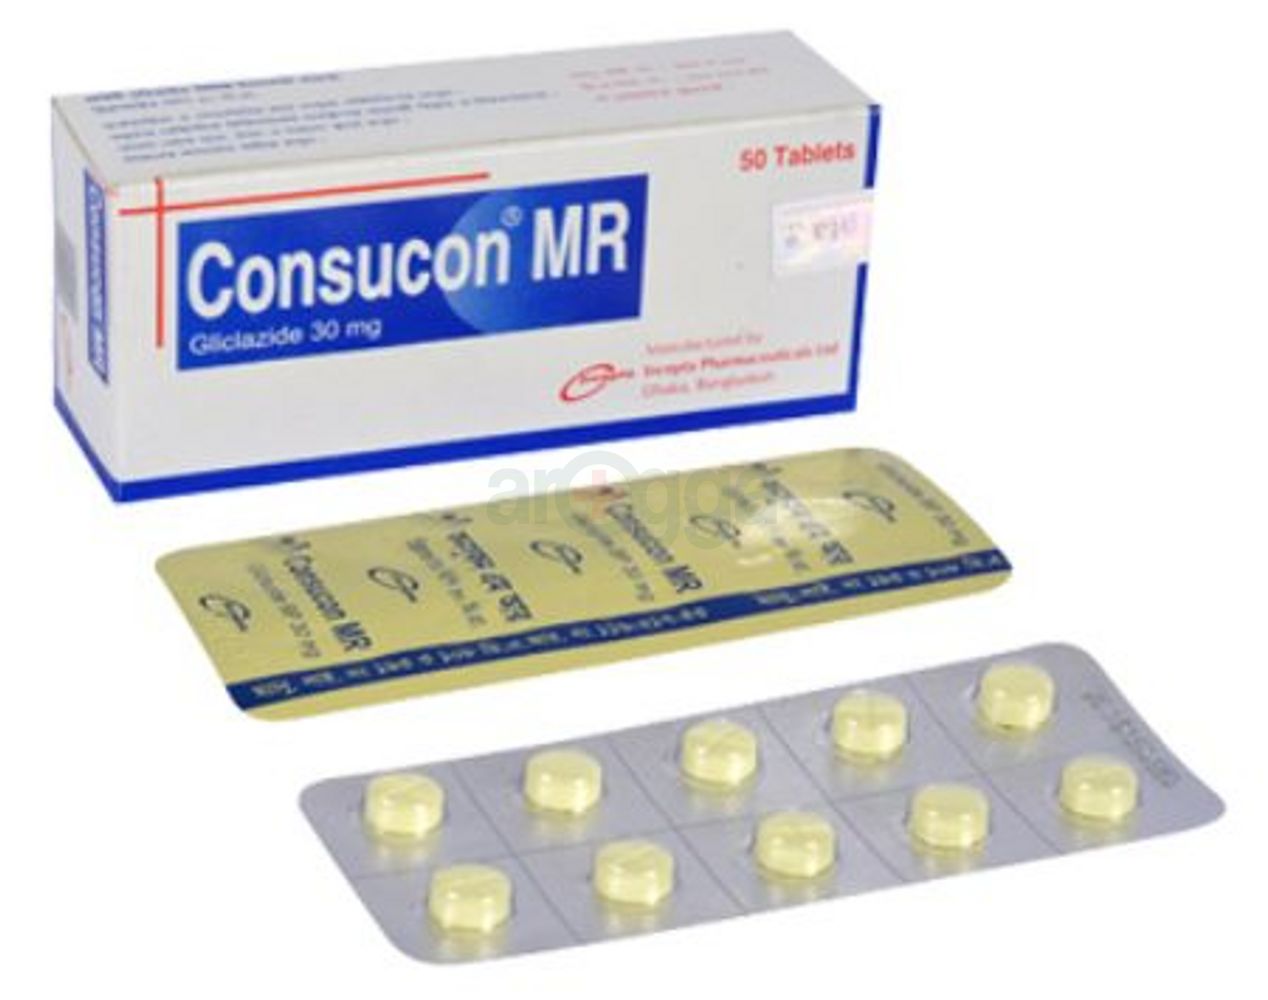 Consucon 30 MR